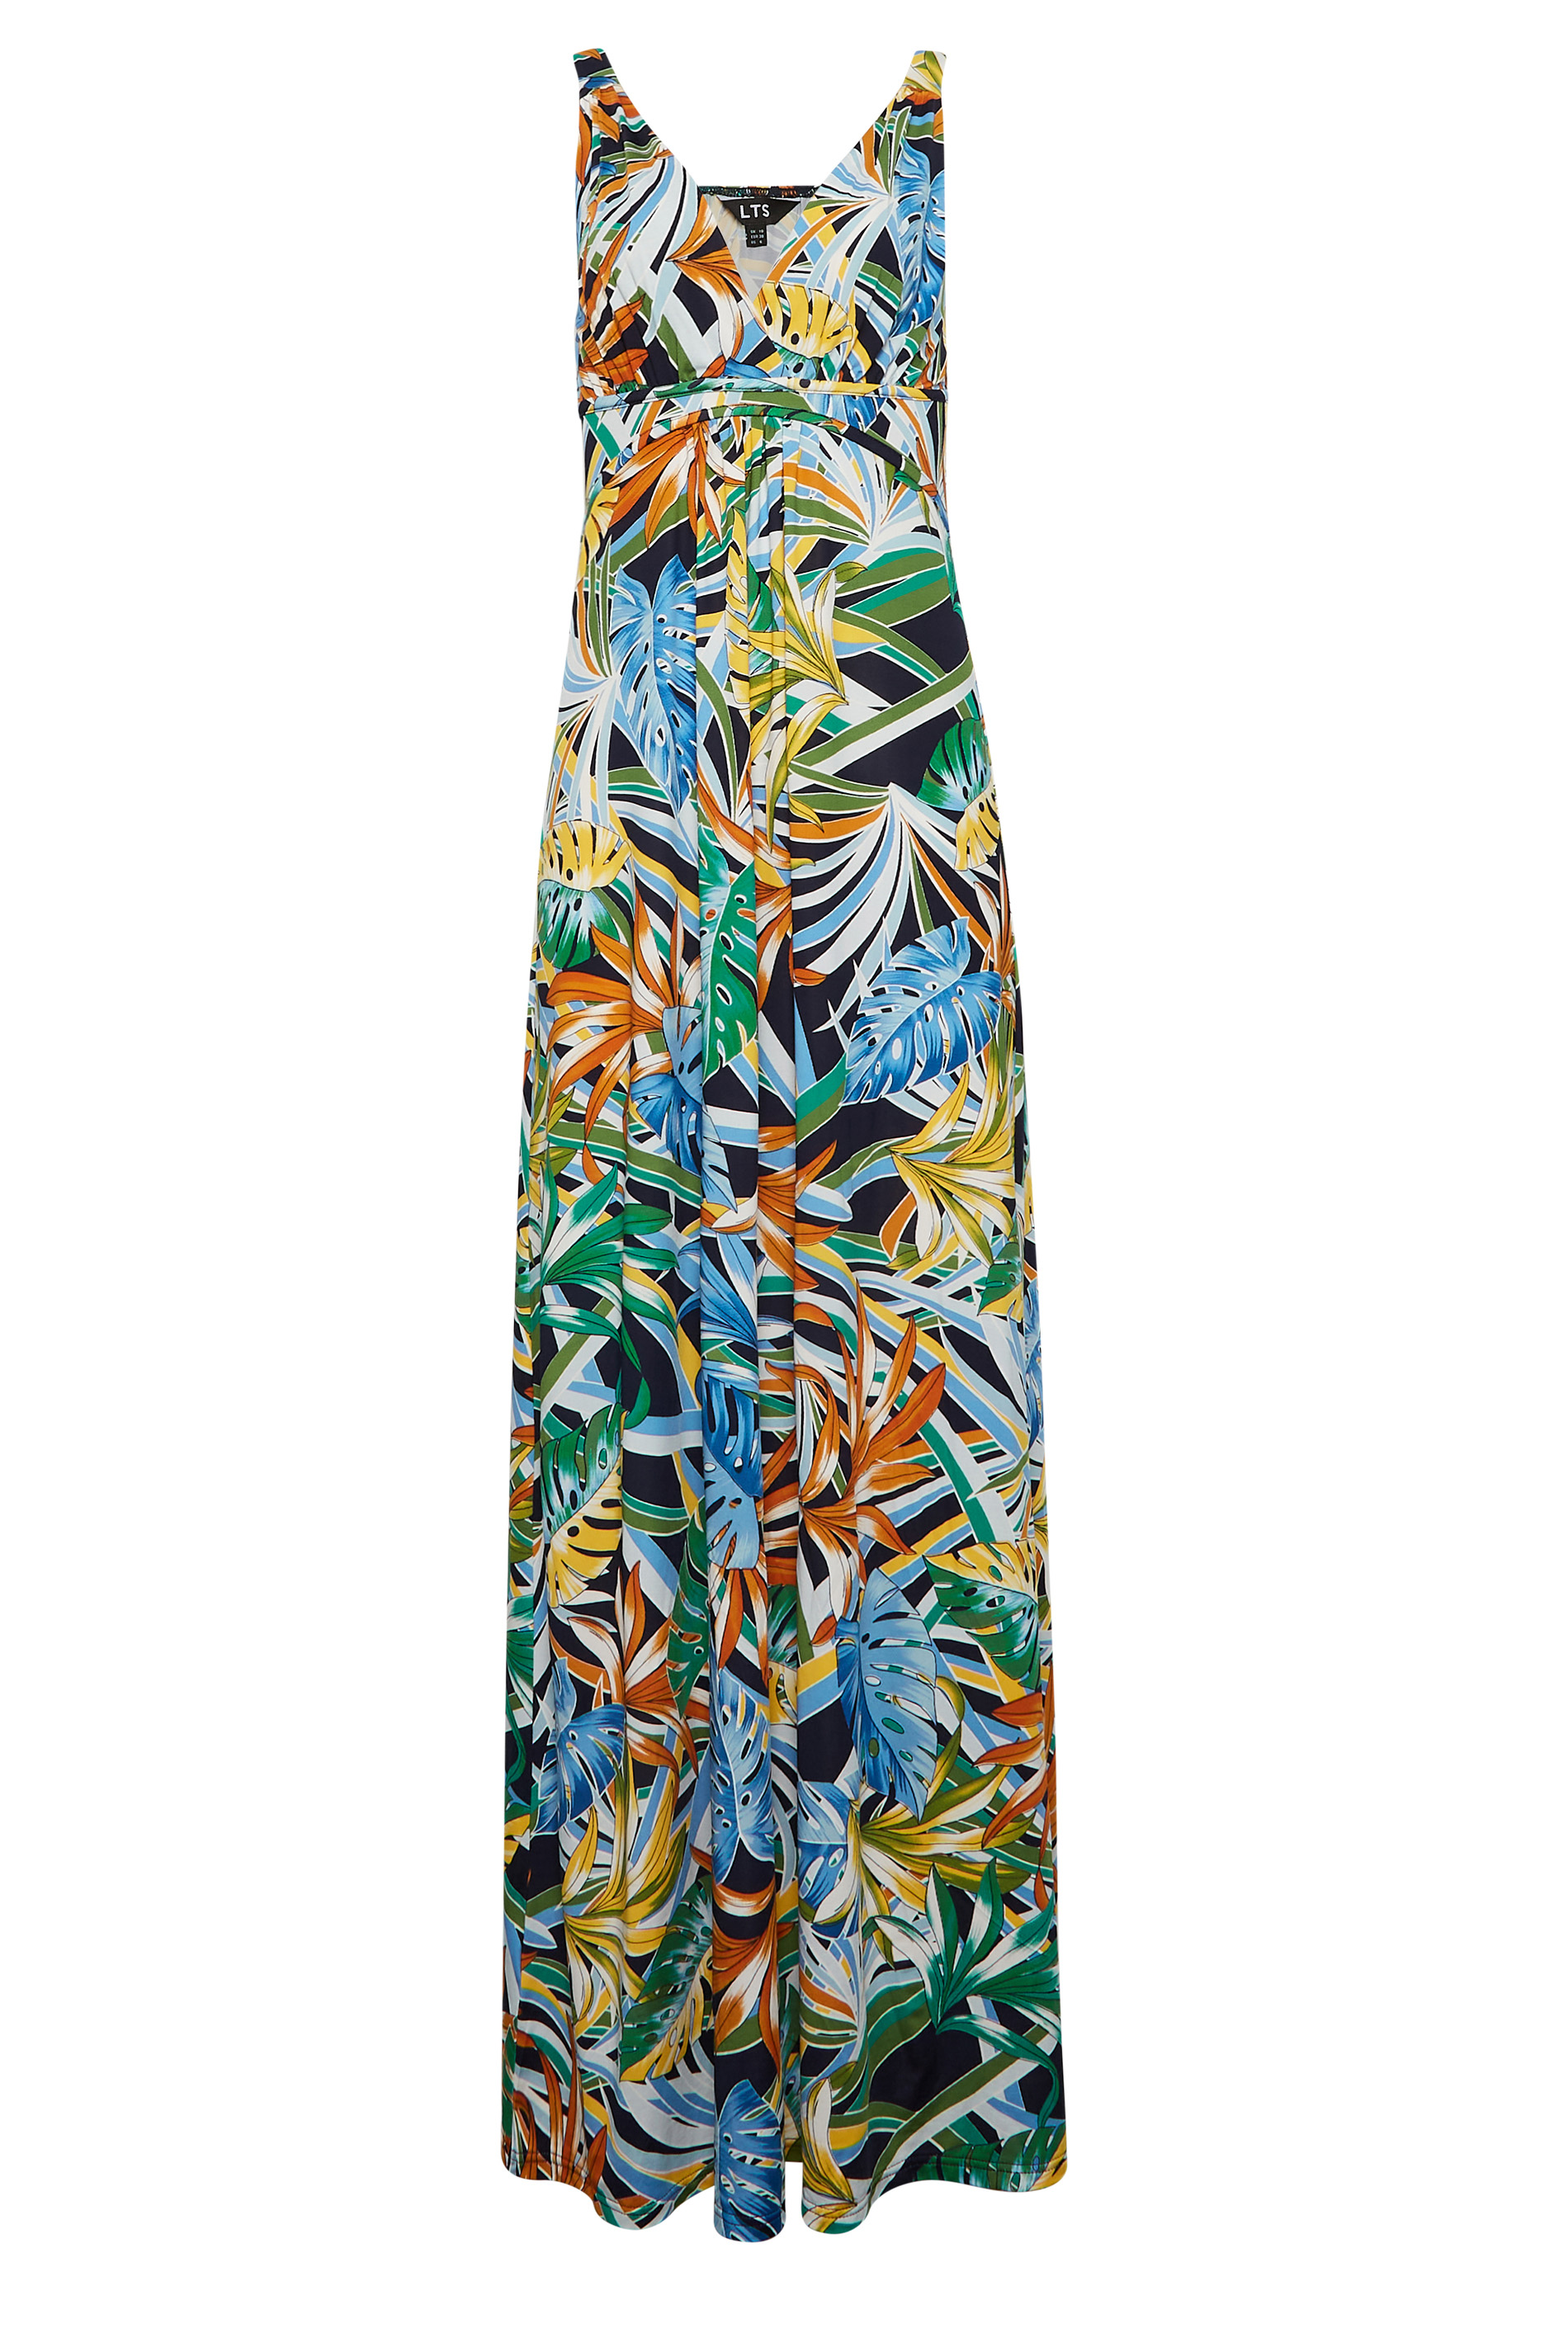 LTS Tall Green Palm Leaf Print Maxi Dress | Long Tall Sally  2